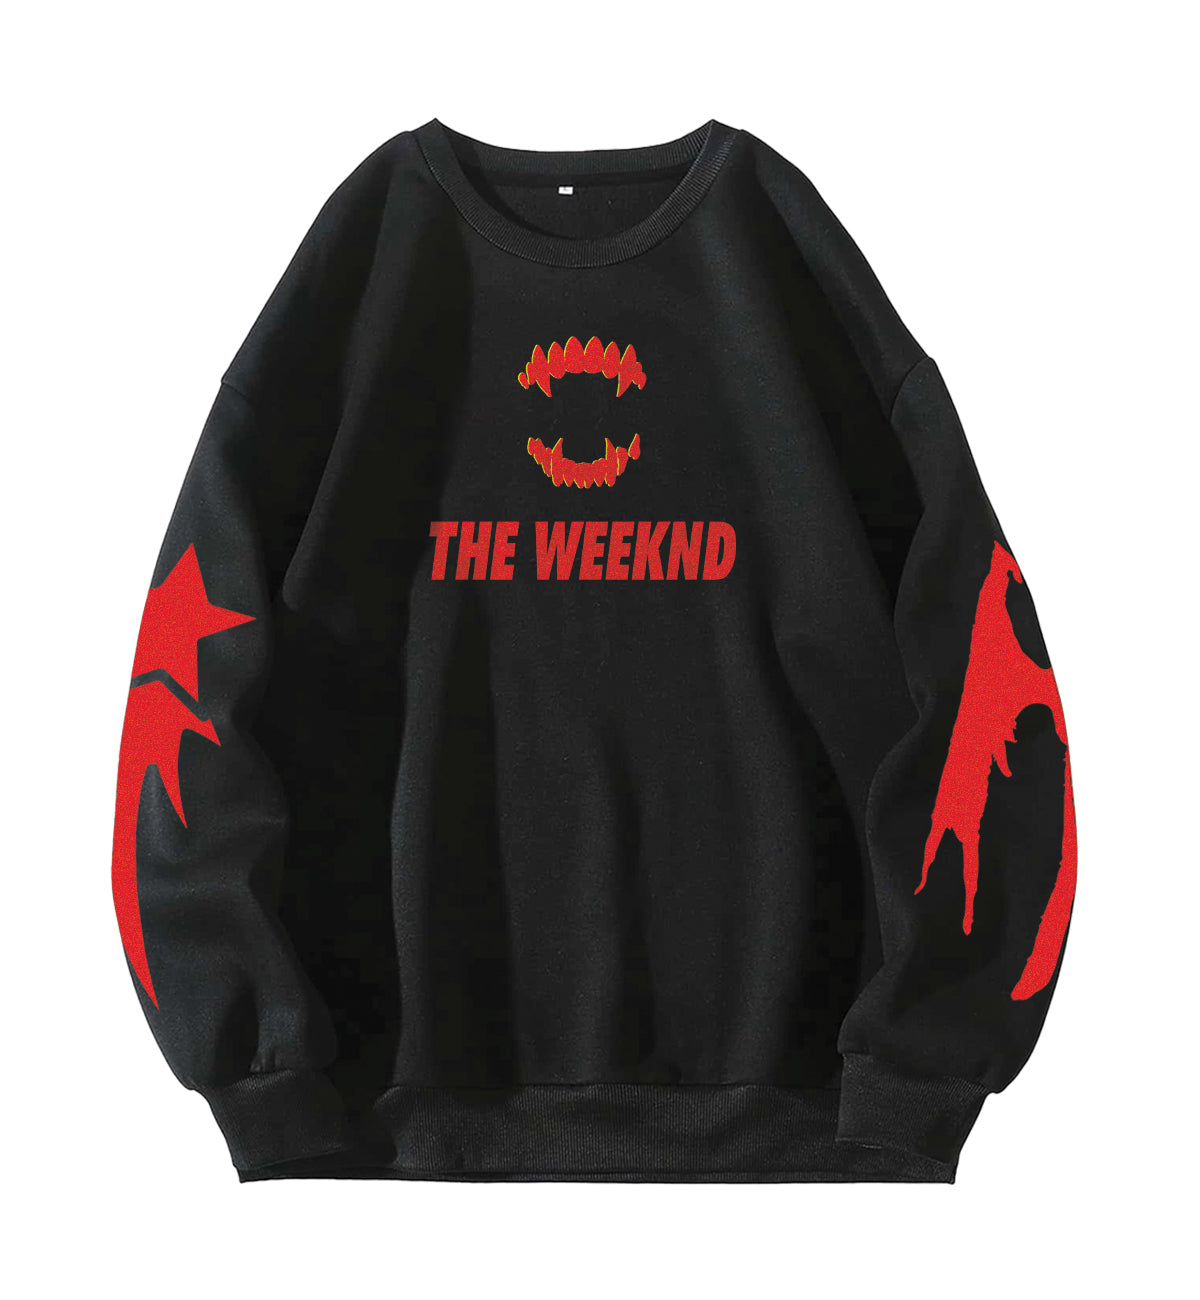 The weeknd Shirt, The weeknd Sweatshirt, The Weeknd Merch AN12902